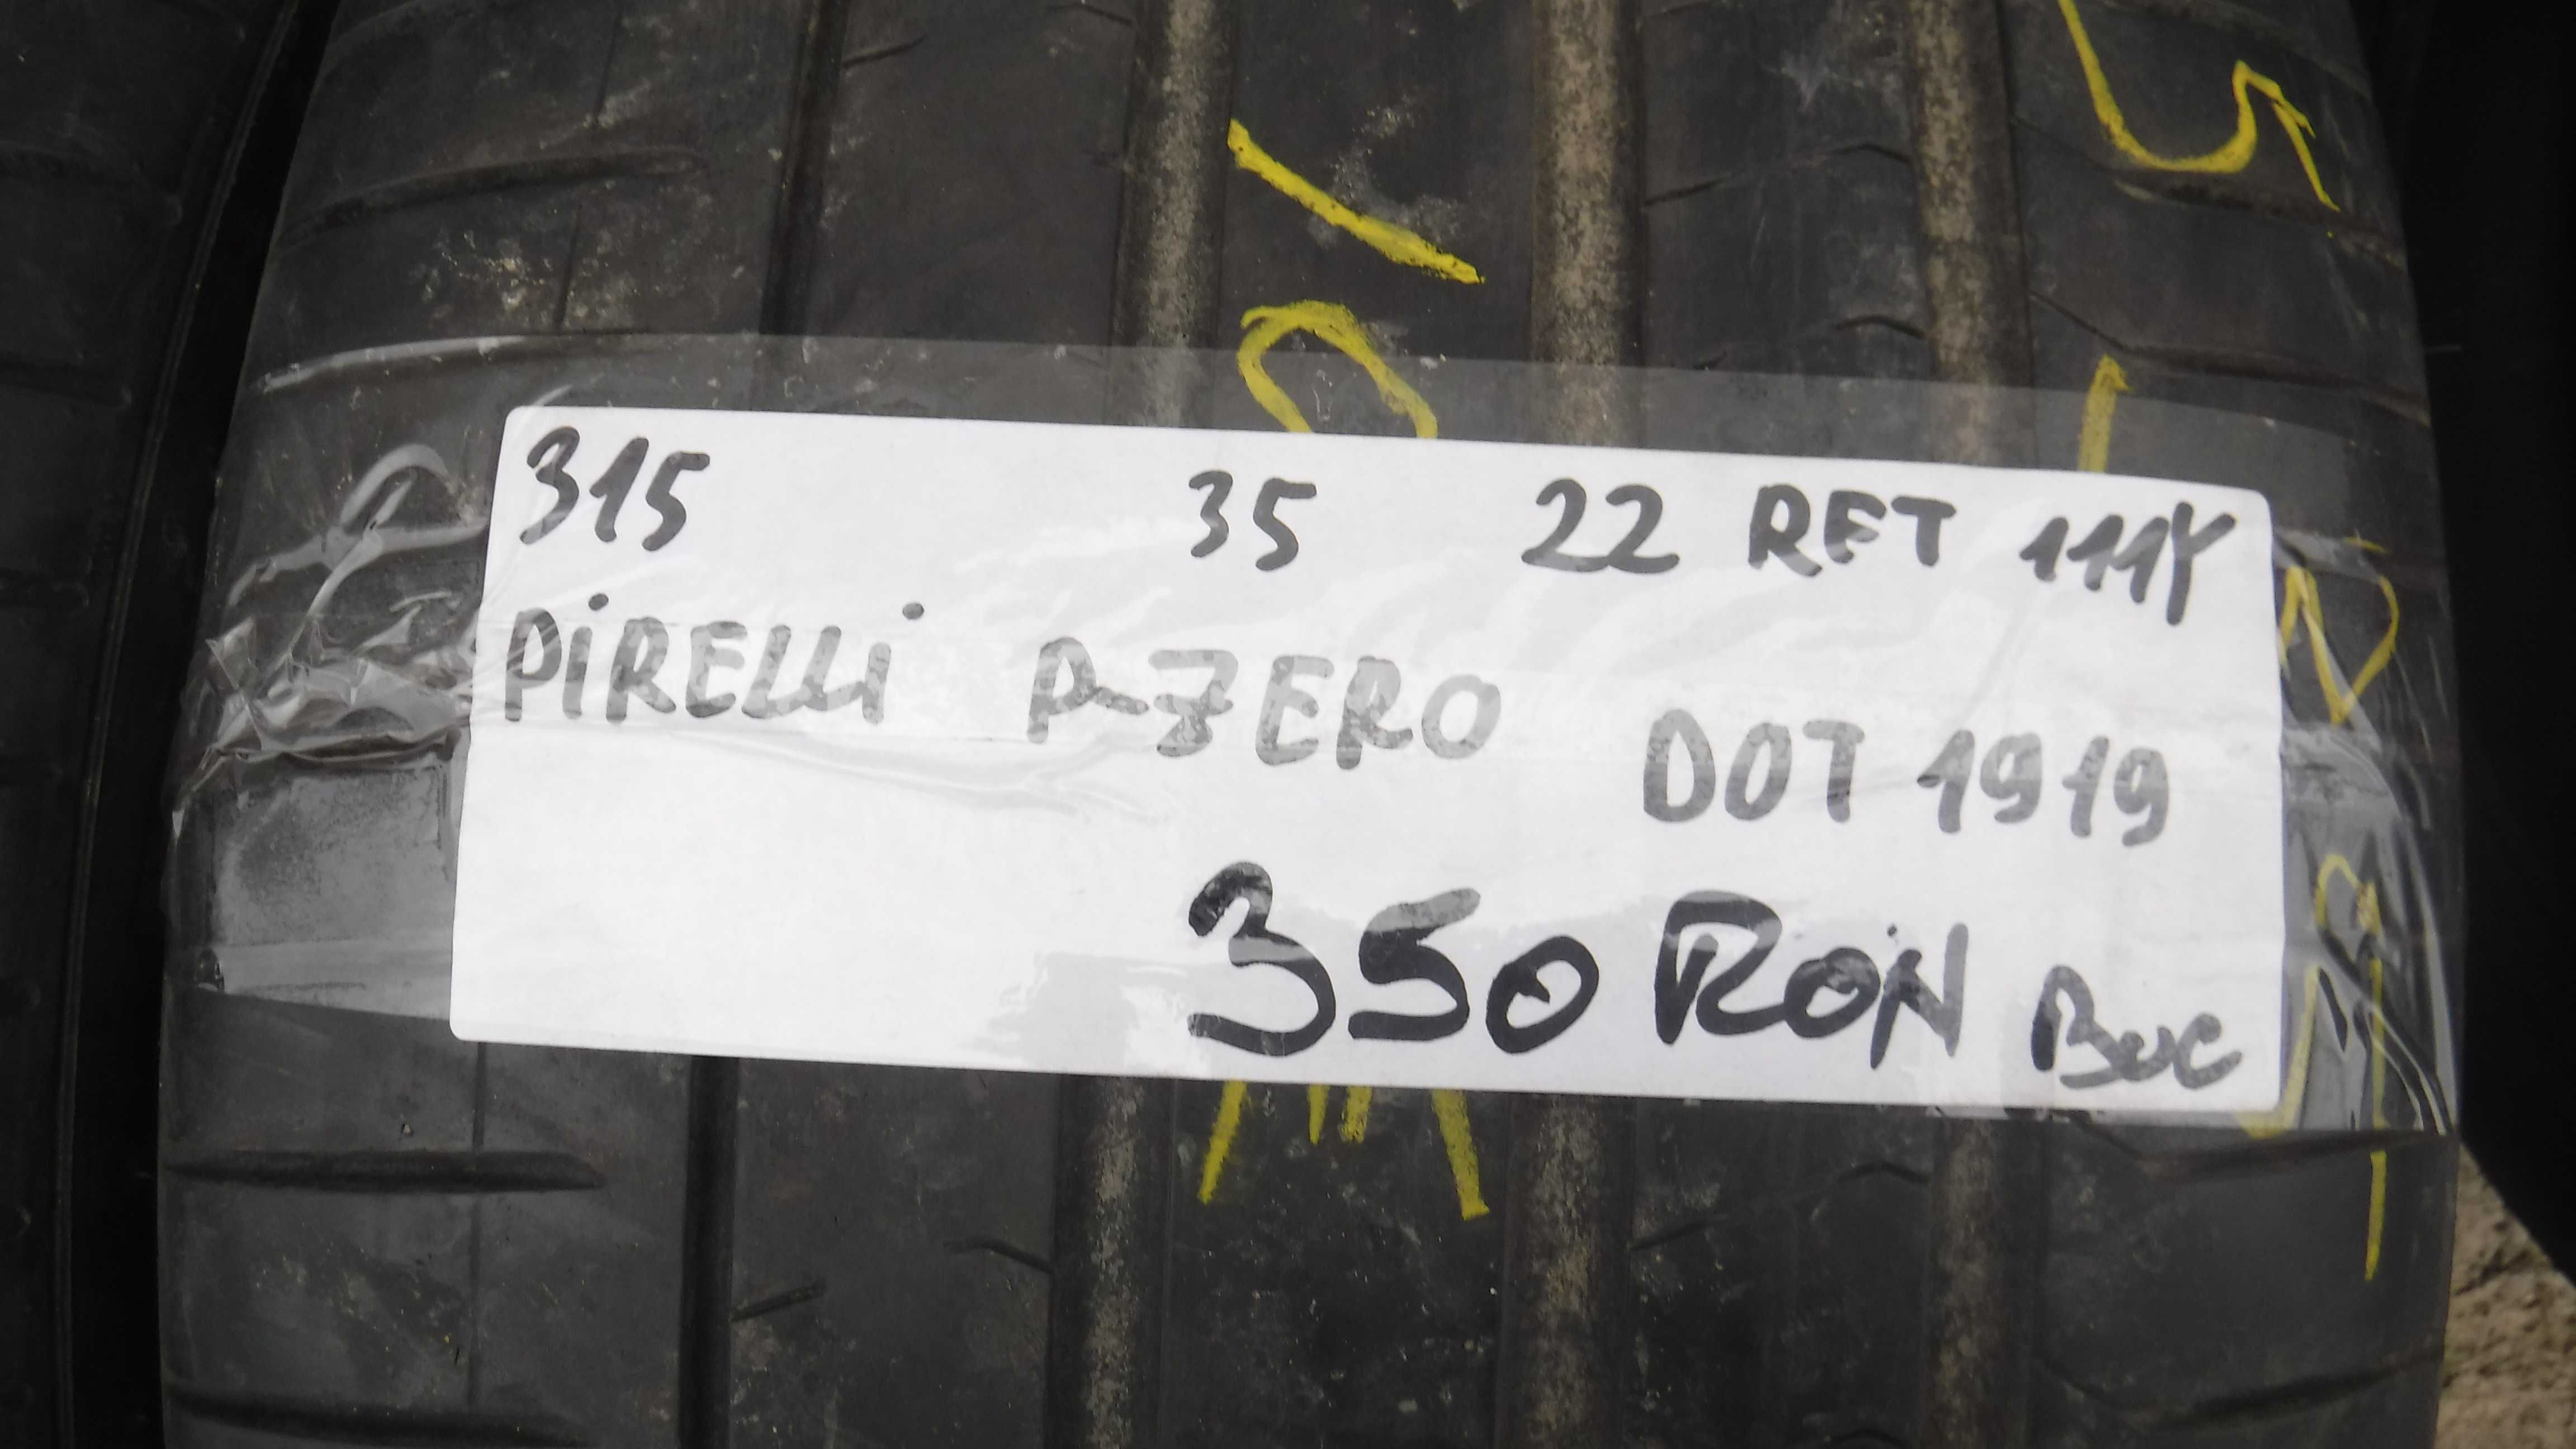 315 35 22 vara Pirelli P Zero RFT 111Y Dot 1919